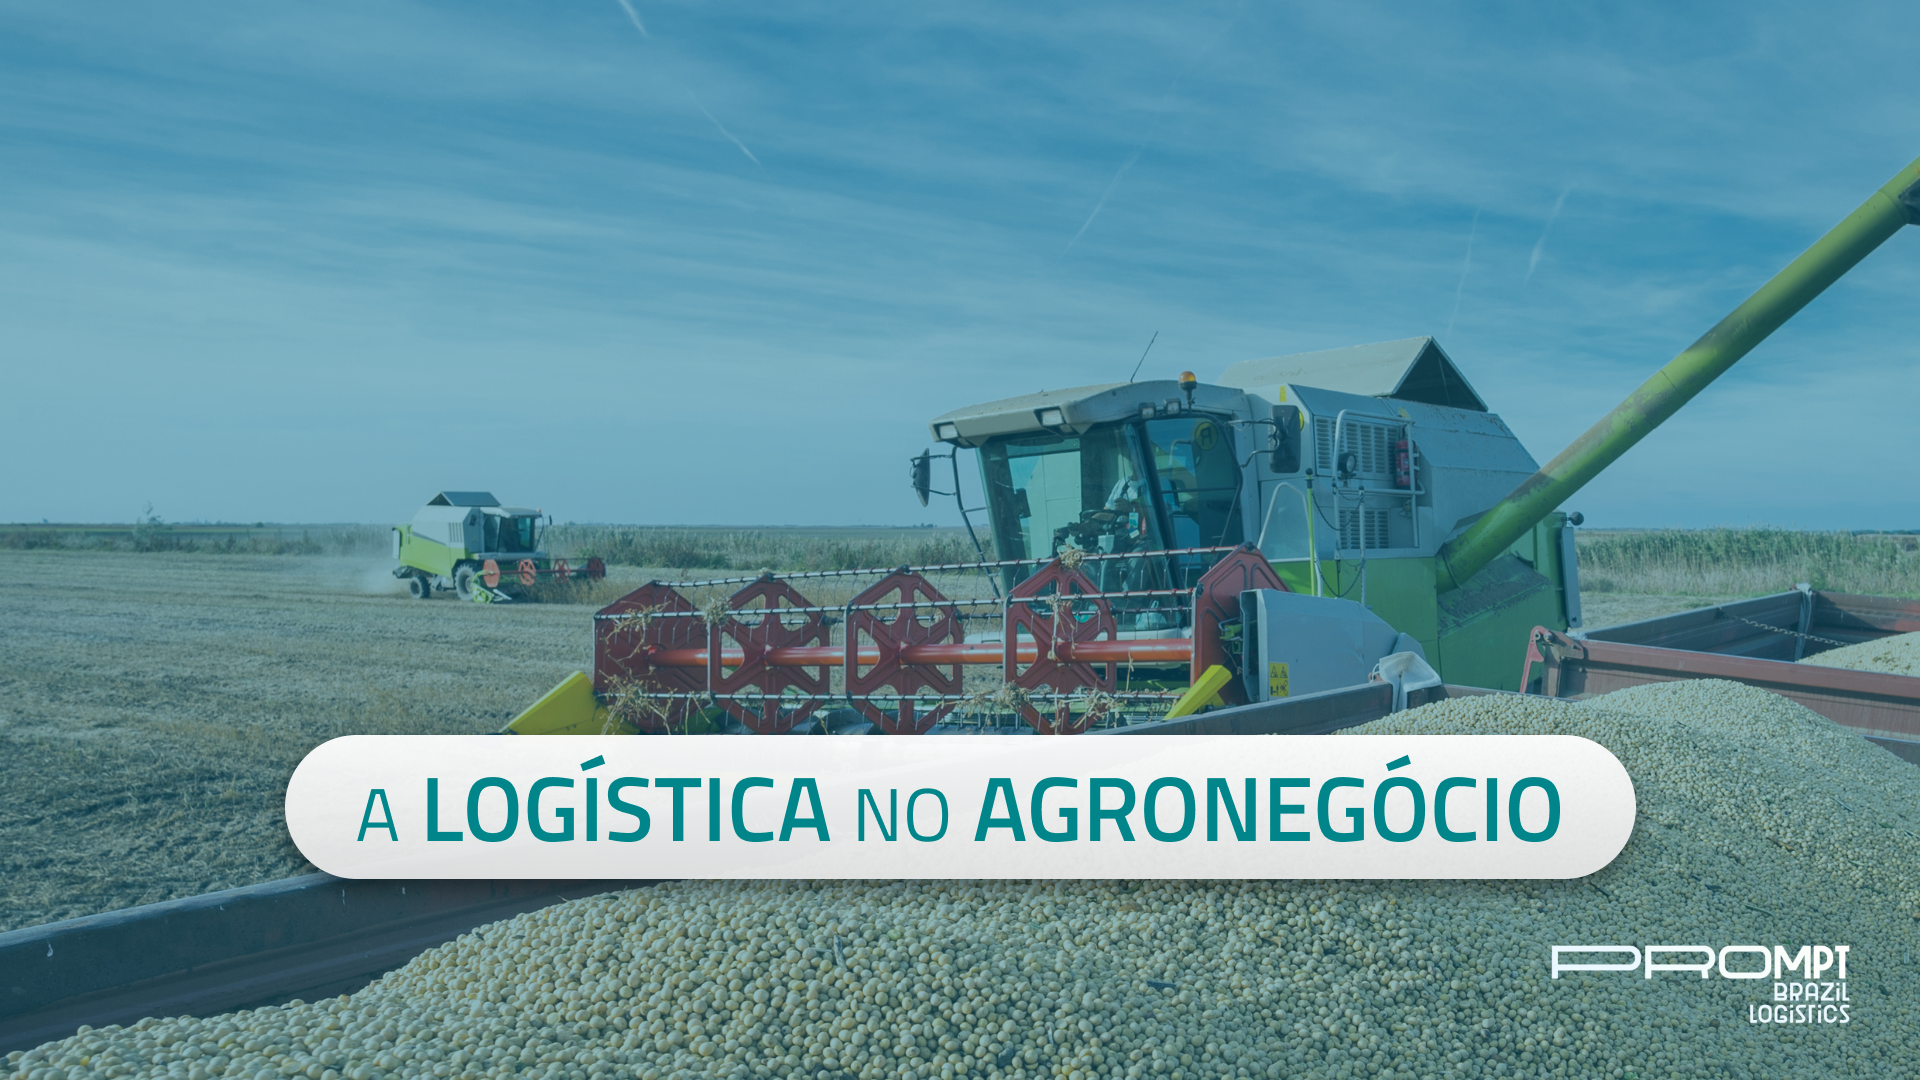 A logistica no agronegócio é essencial, afinal, é por meio dela que o Brasil alimenta bilhões de pessoas ao redor do mundo. Conte com a Prompt Brazil Logistics para uma logística de alta confiança.